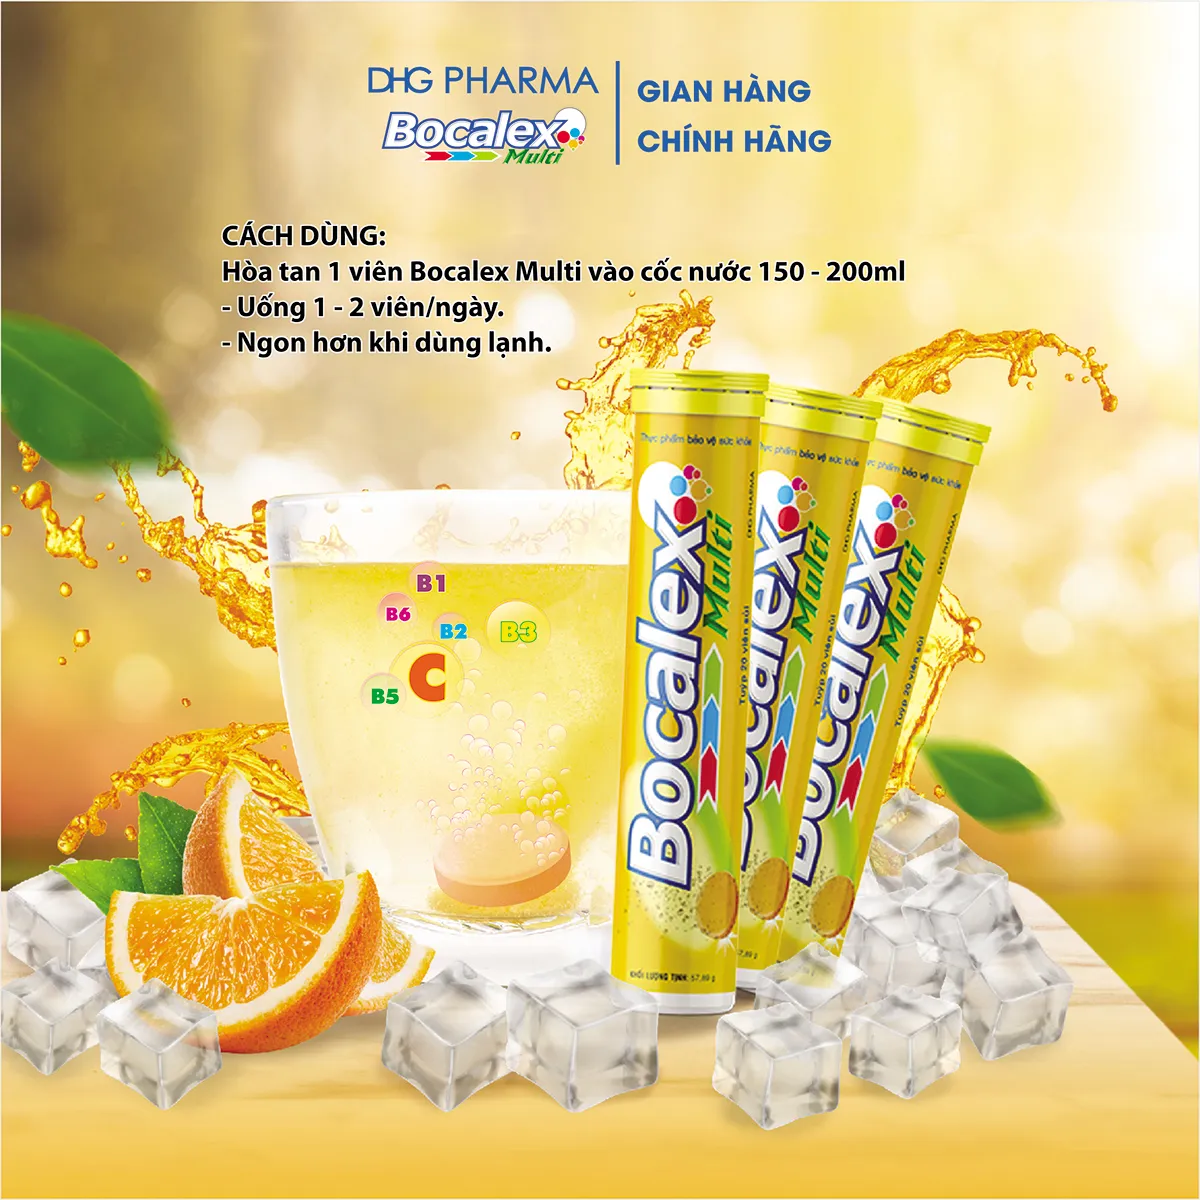 TPCN Bocalex Multi bo sung vitamin DHG Pharma3